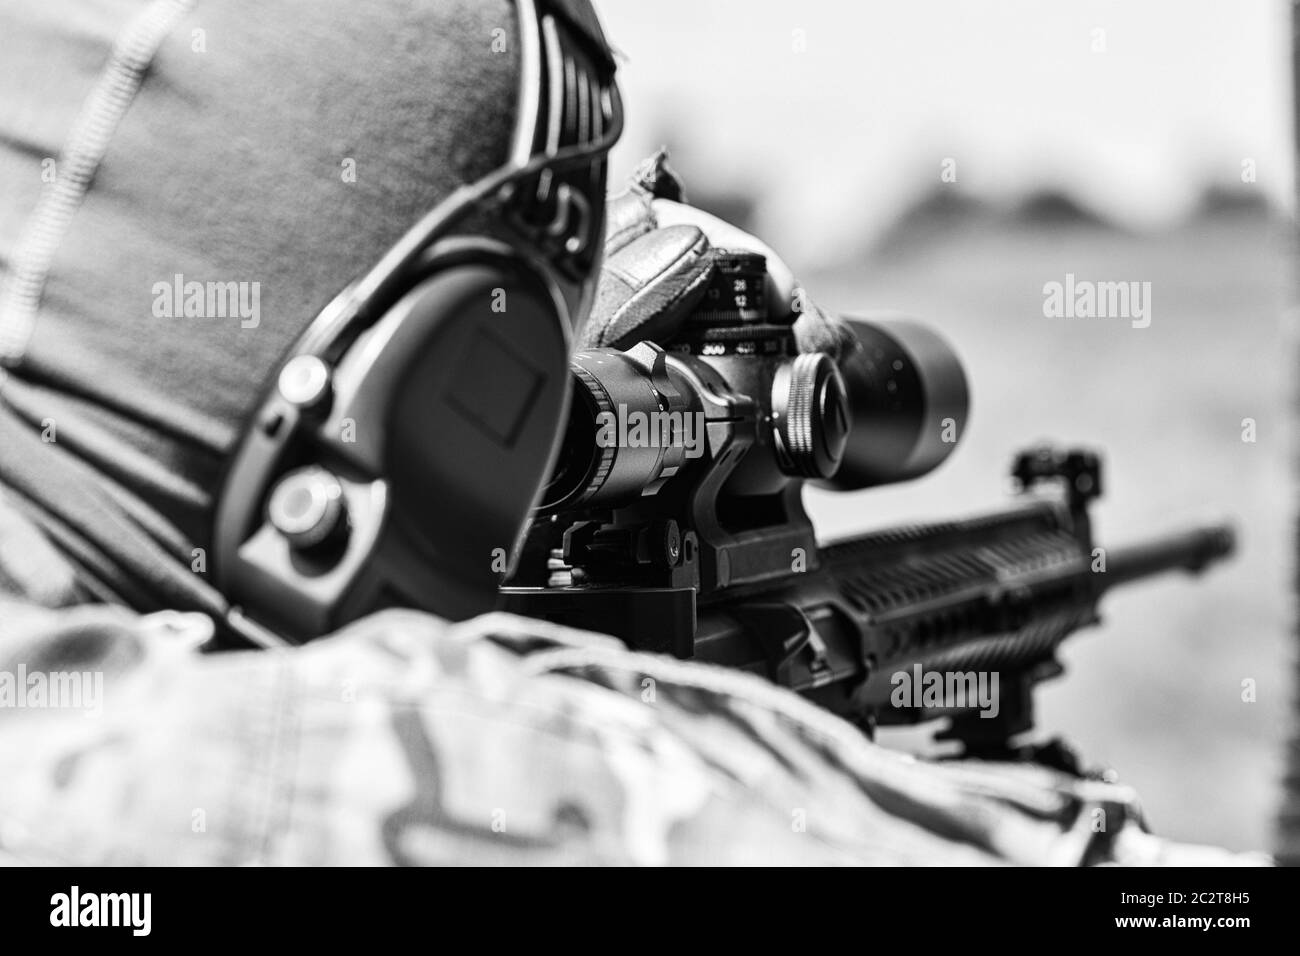 Militärmann in Tarnuniform mit Gewehr. Ausgerüstet Scharfschützenschießen mit Gewehr. Stockfoto